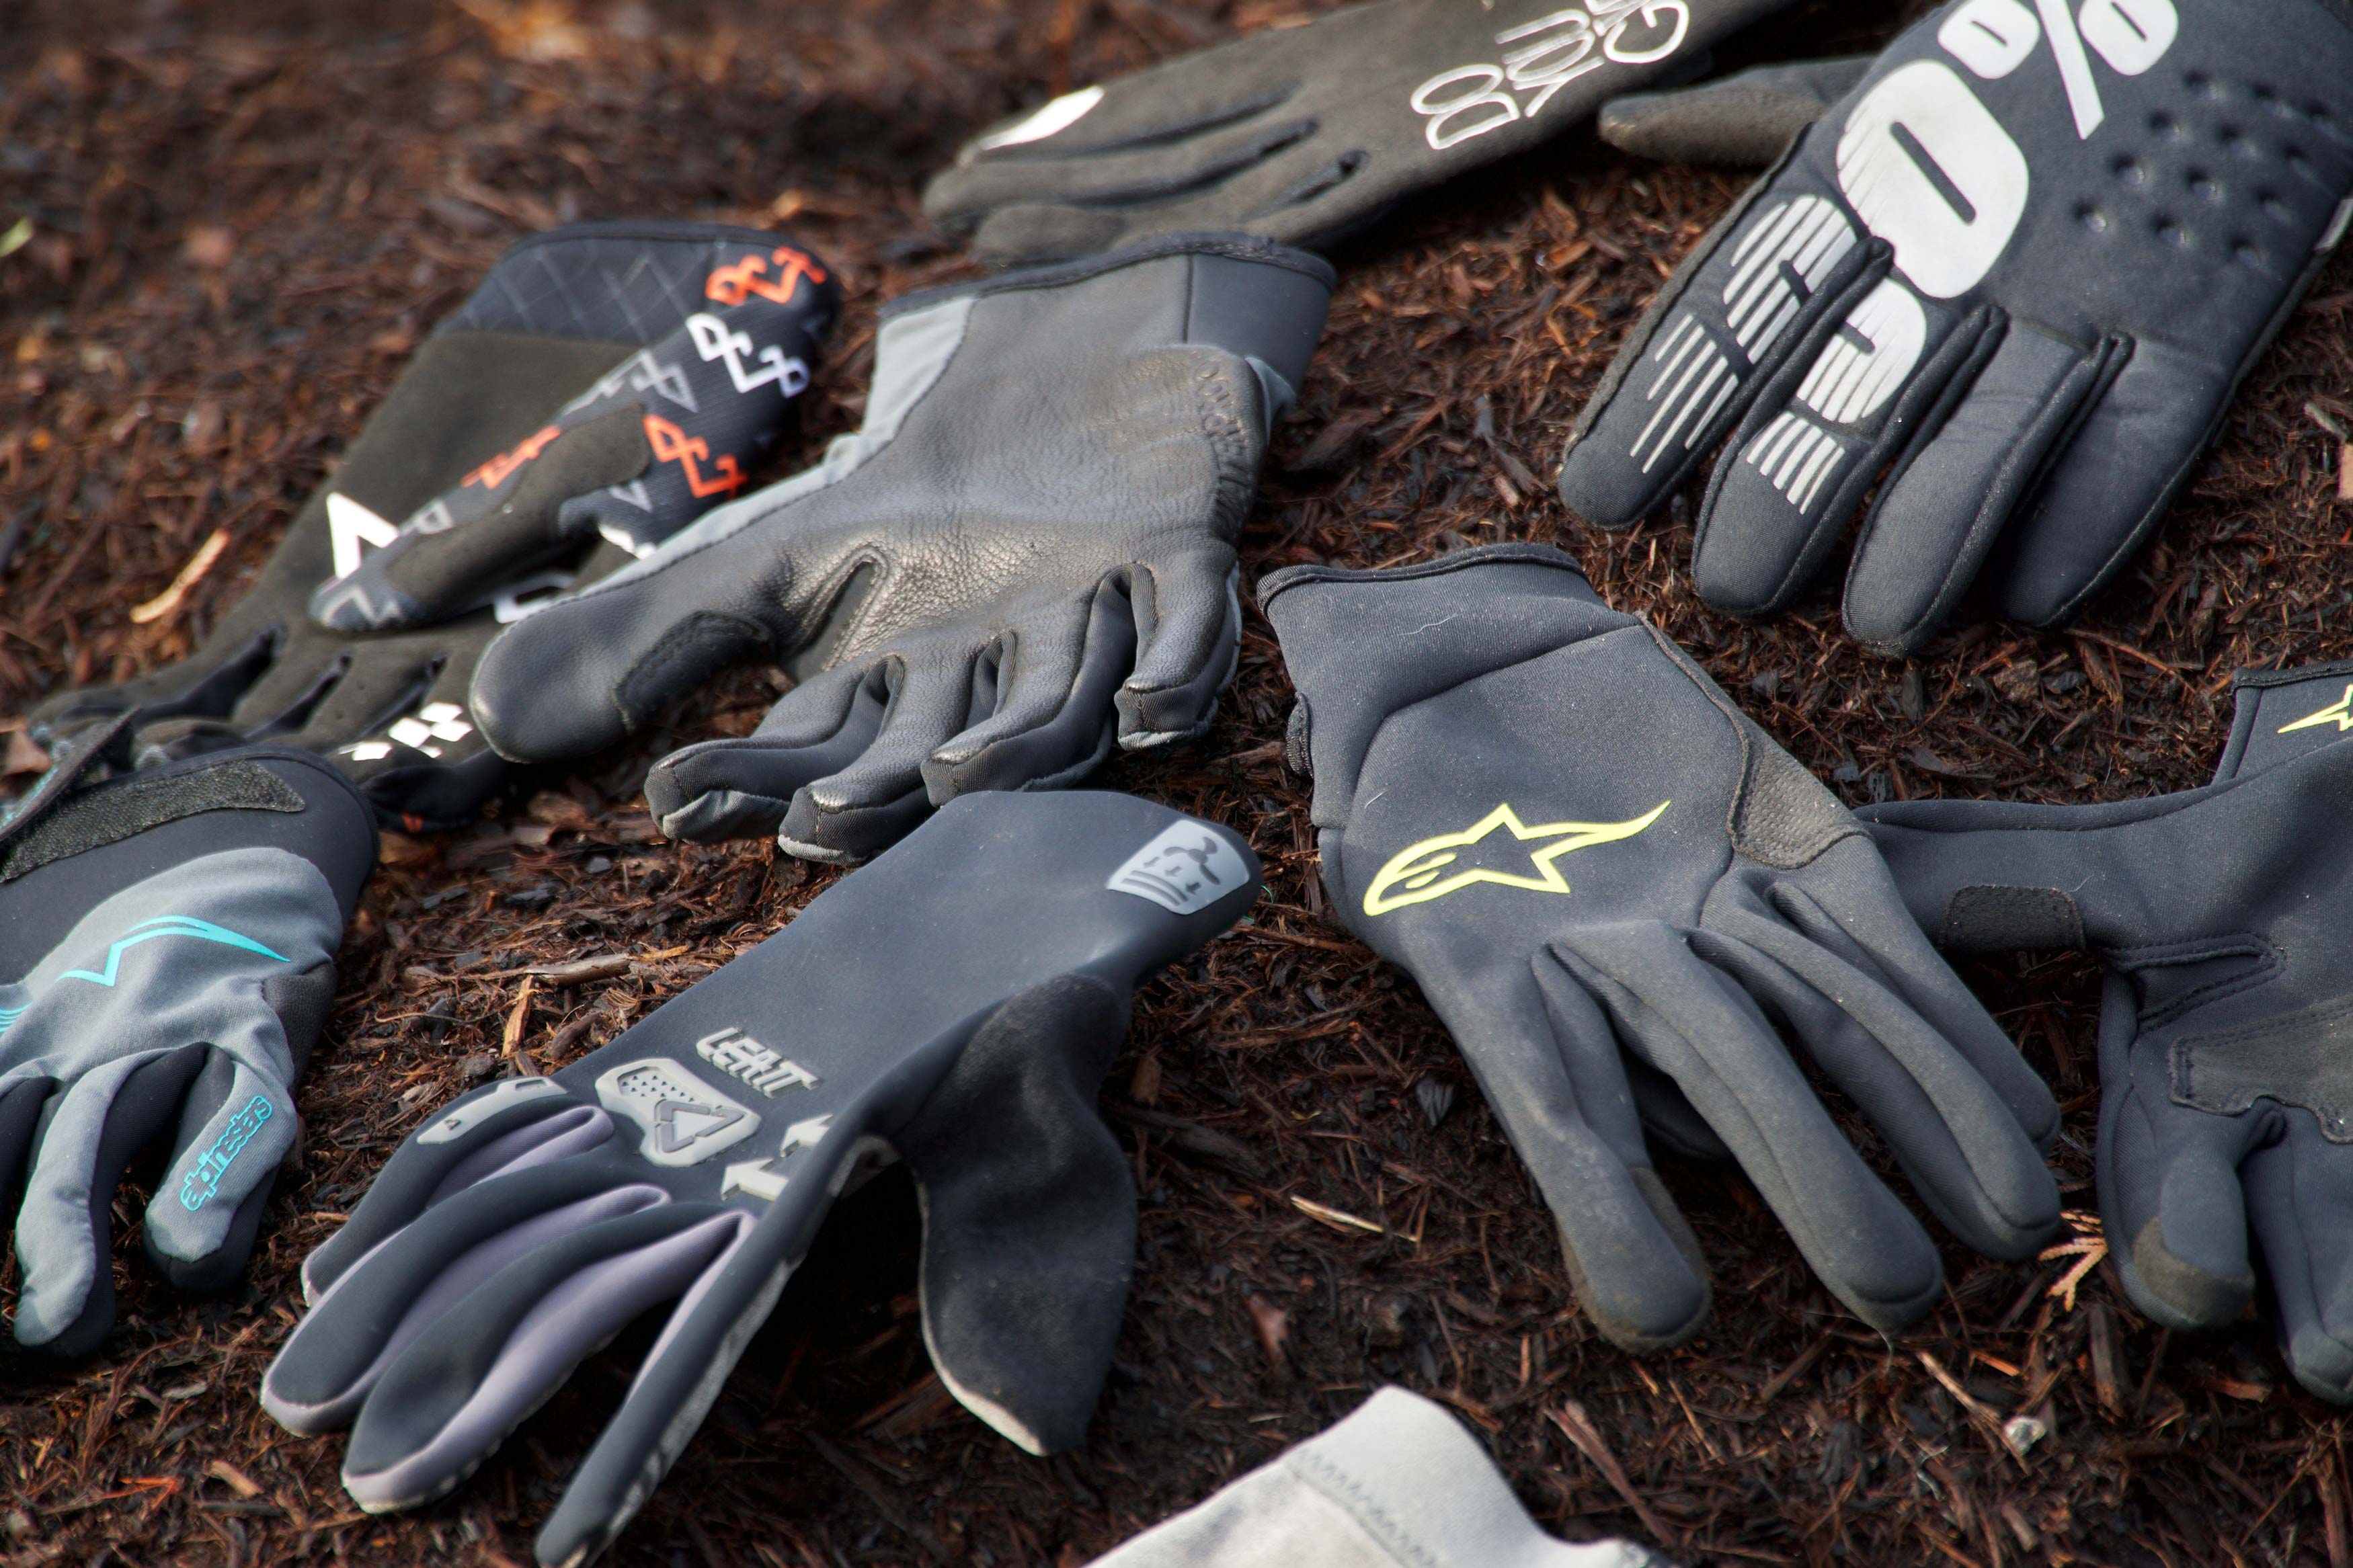 winter MTB gloves